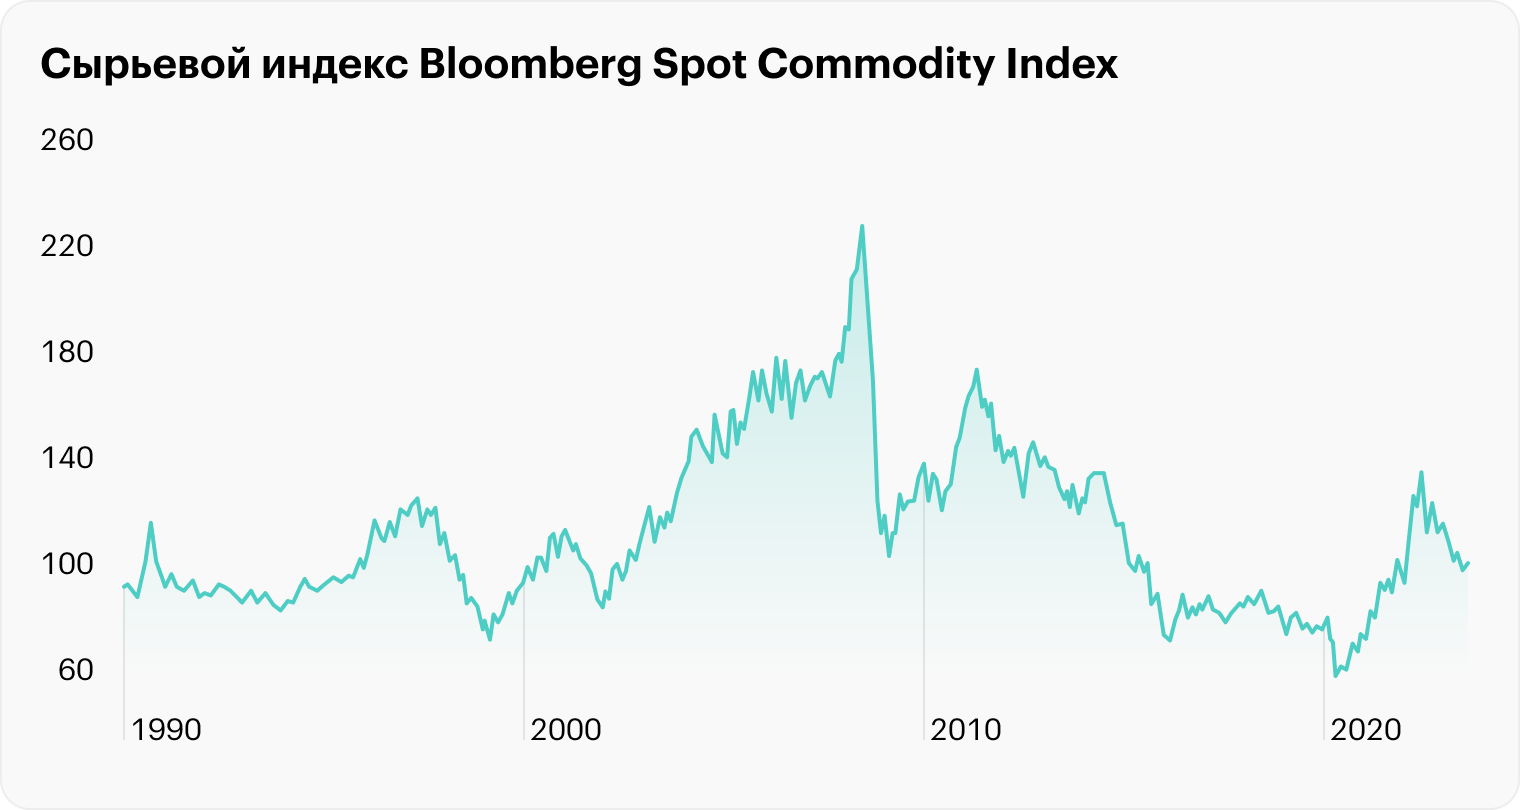 Сырьевые циклы длятся 30 лет. Сейчас цены на биржевые товары на тех же уровнях, что в 1990⁠-⁠х годах. Согласно теории ожидается растущая фаза сырьевых рынков. Источник: Bloomberg